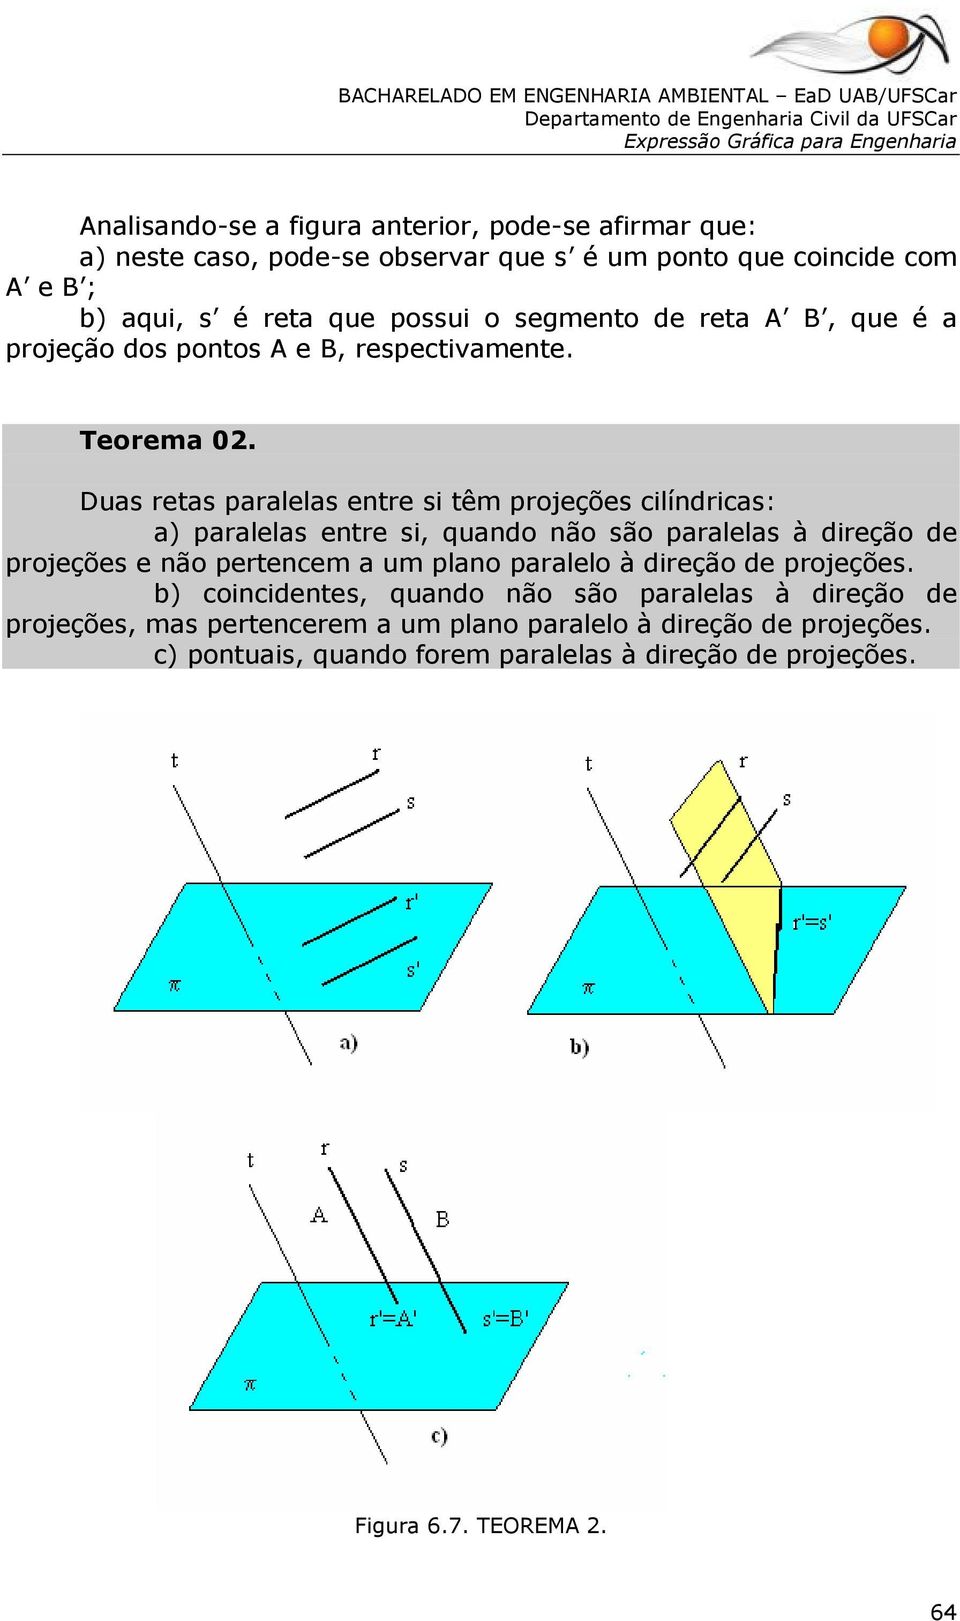 Duas retas paralelas entre si têm projeções cilíndricas: a) paralelas entre si, quando não são paralelas à direção de projeções e não pertencem a um plano